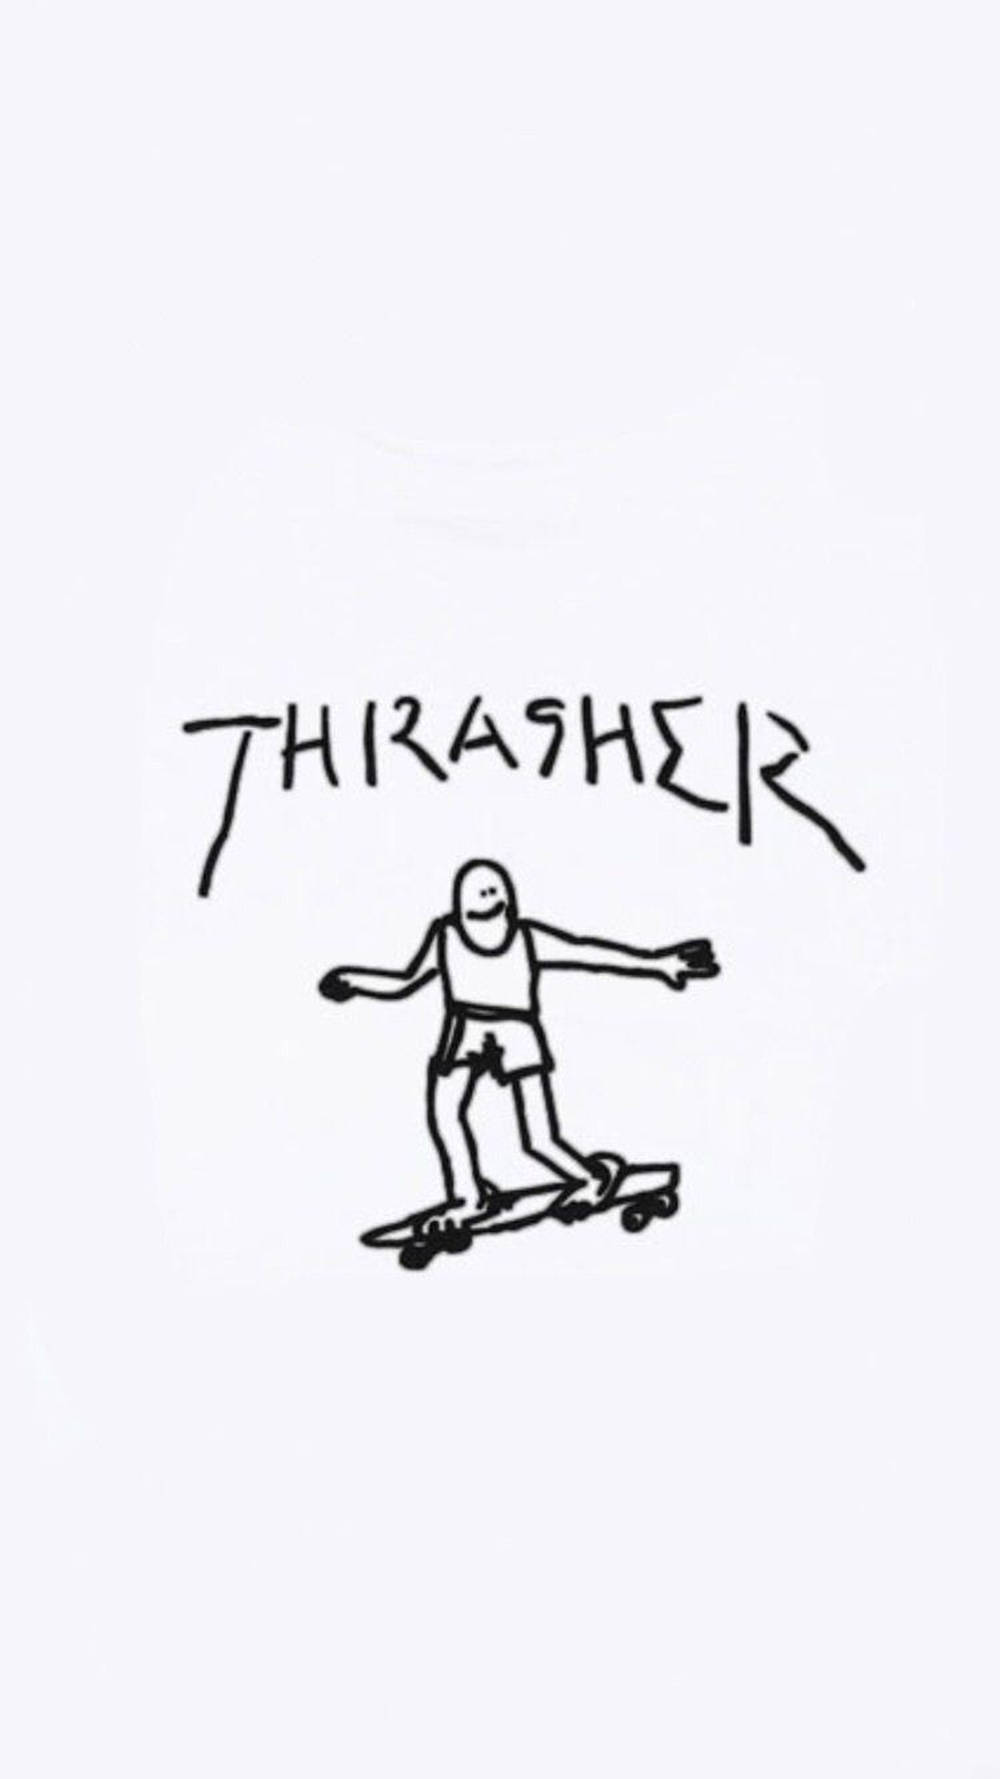 Skater Aesthetic Thrasher Stick Figure Background